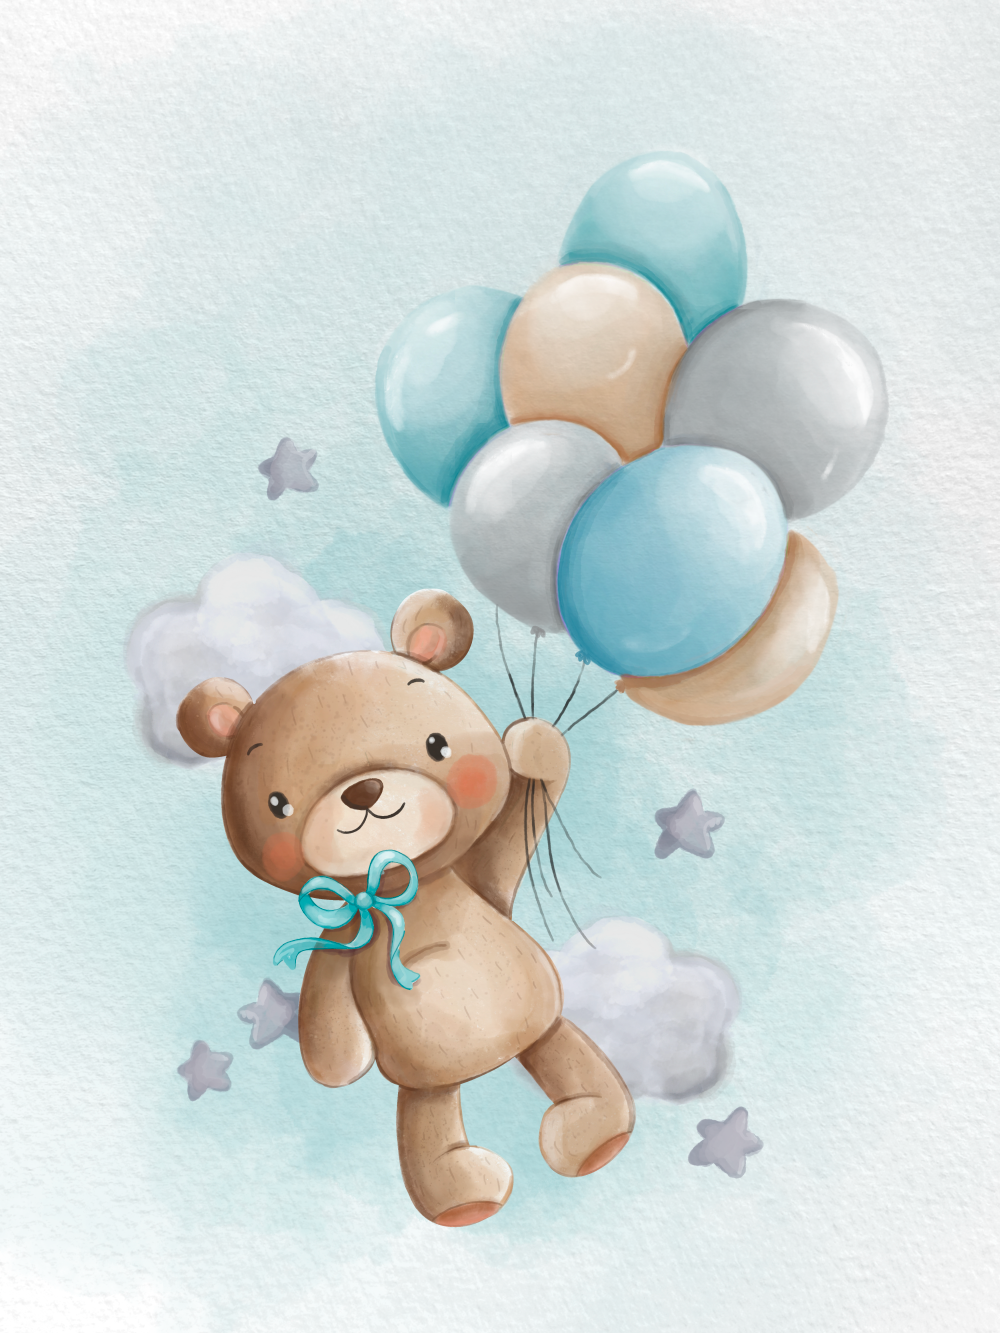 Originální personalizovaný obraz nebo plakát na míru jako dárek pro chlapce, modrý medvídek s balónky | ZivotniOkamziky.cz